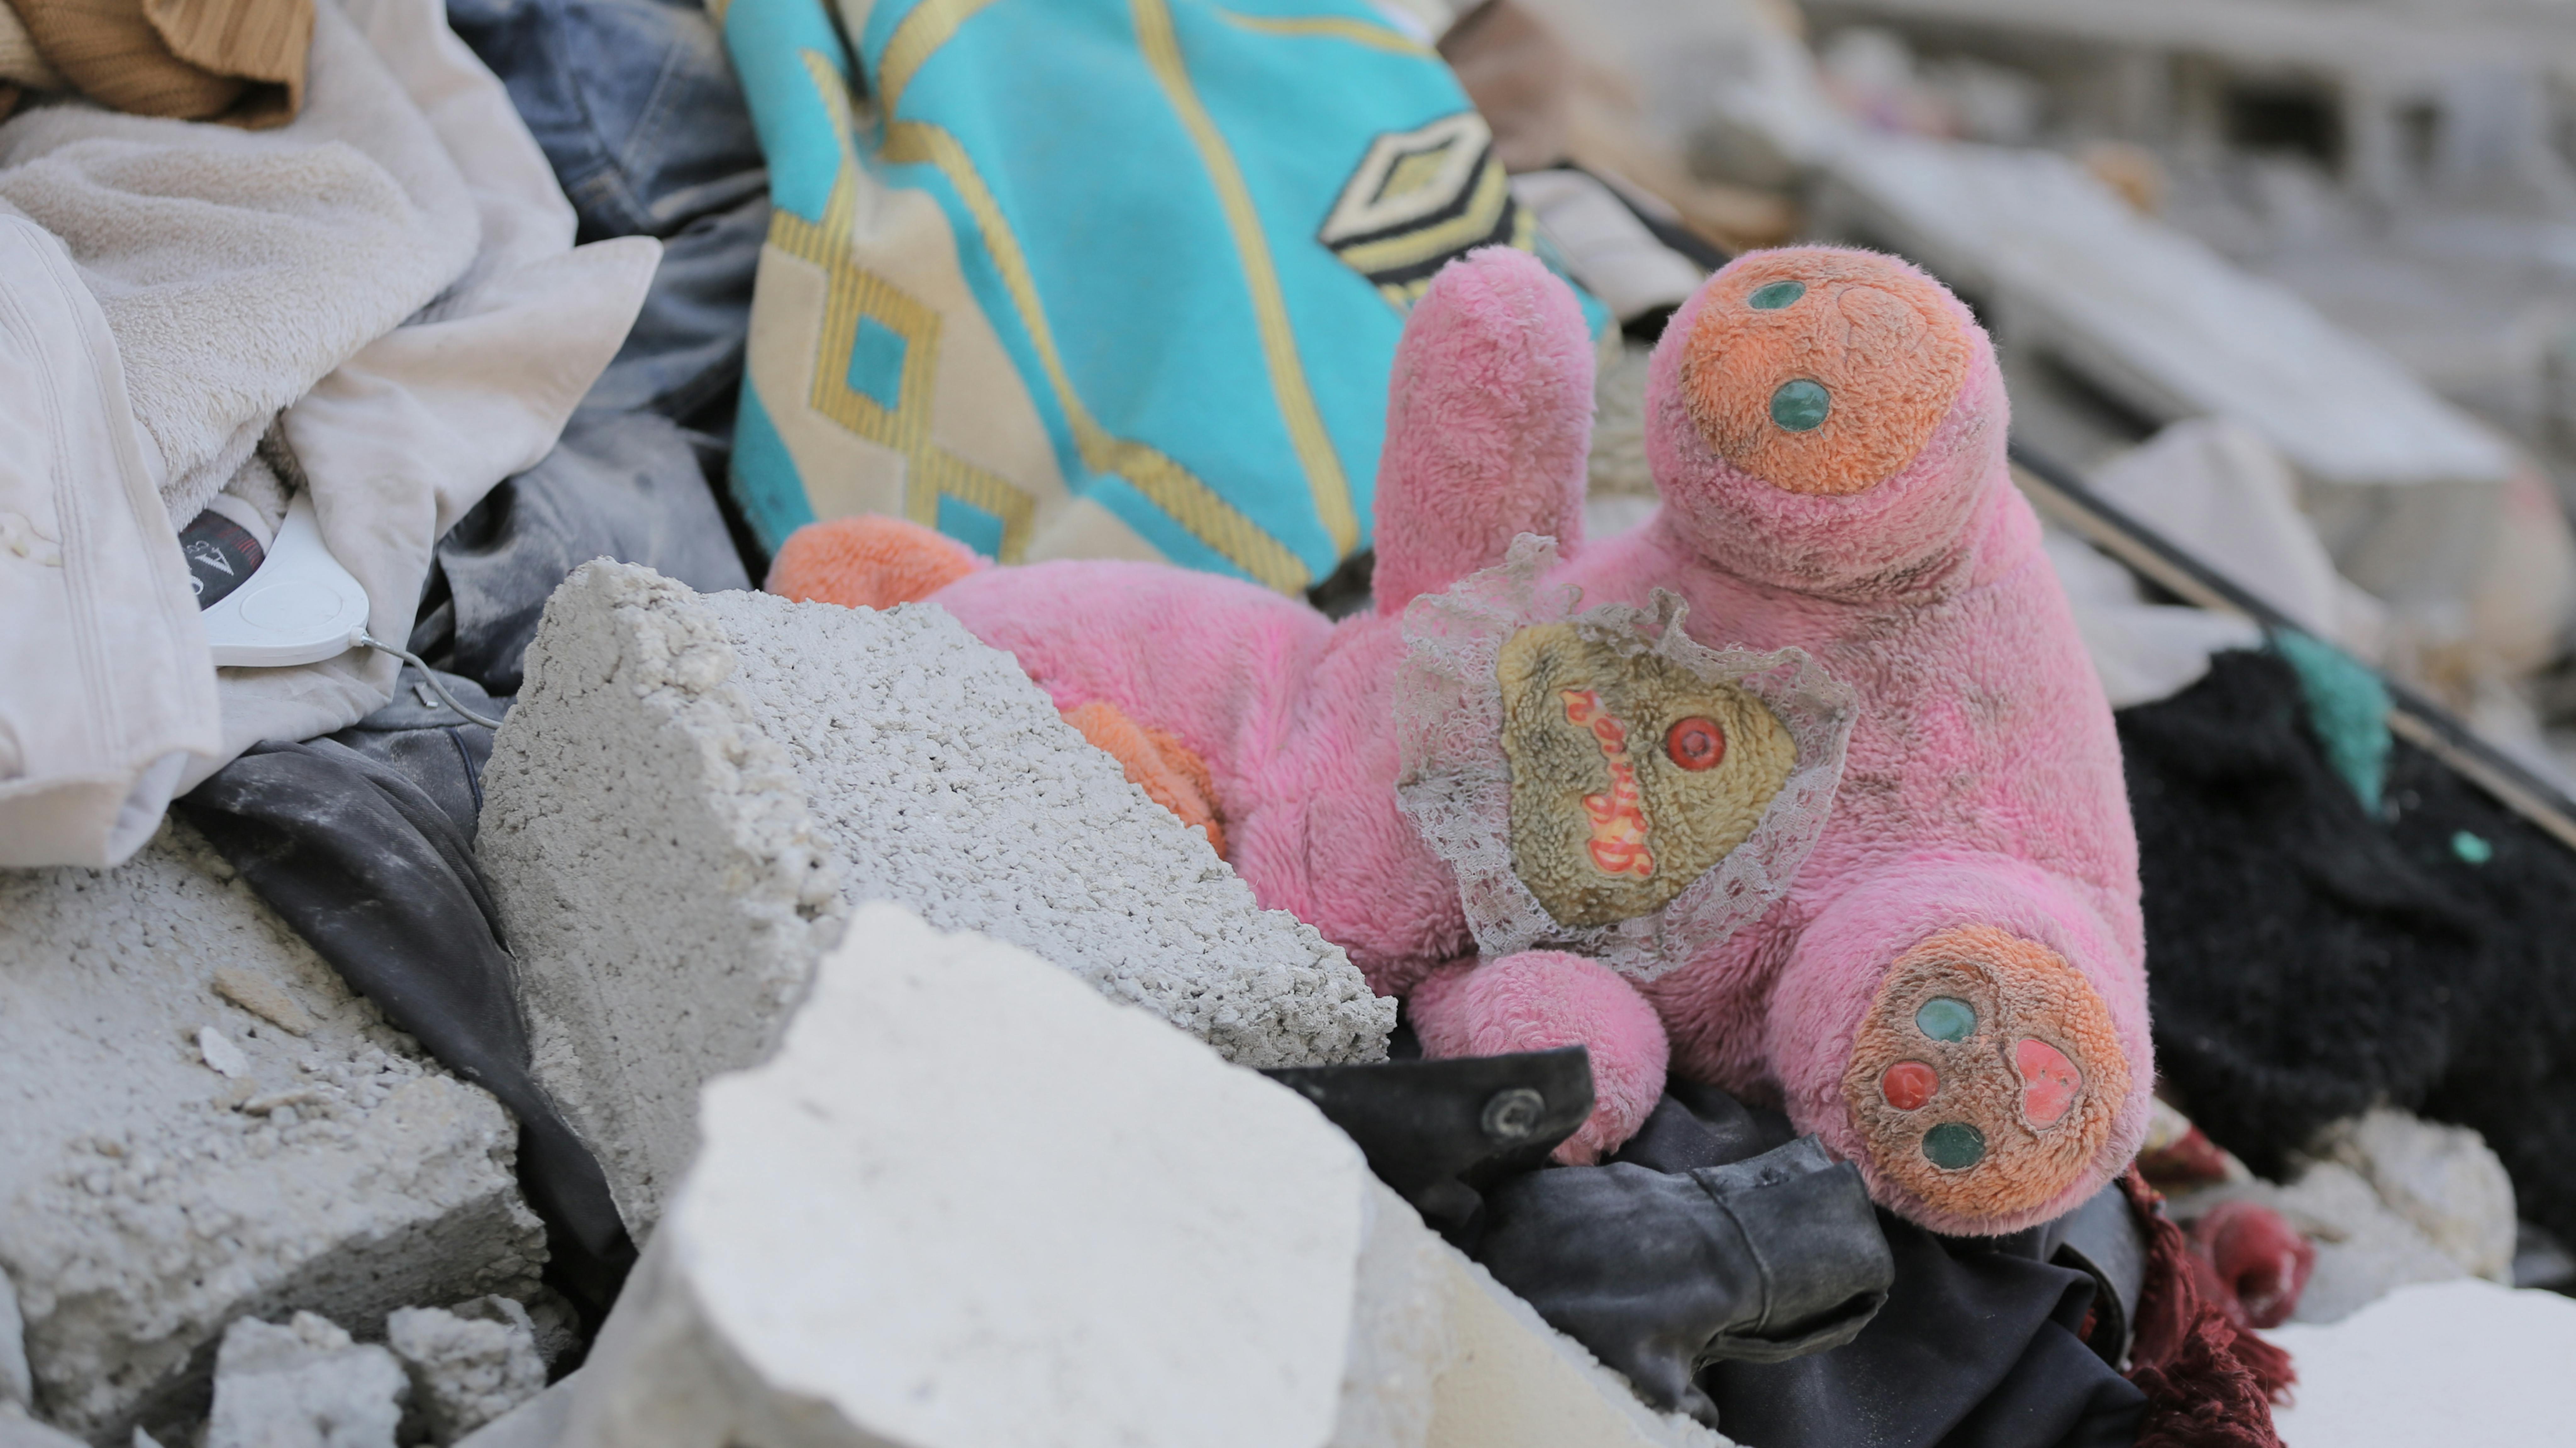 Palestina - un peluche viene visto tra le macerie di una casa distrutta a Beit Hanoun.